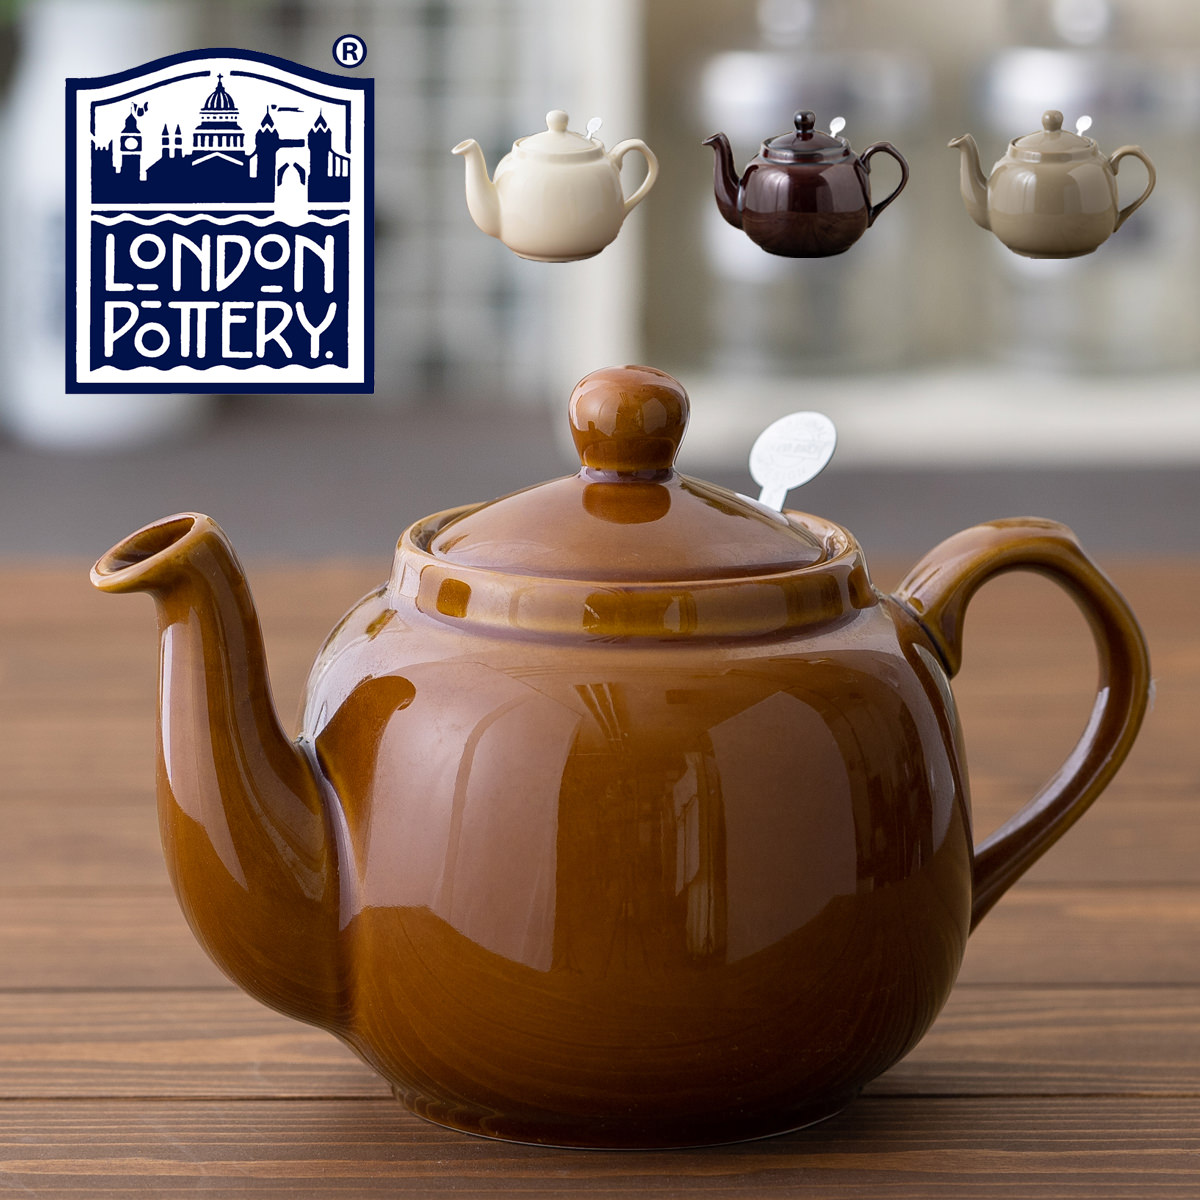 London Pottery ティーポット 900ml(1.2L)  英国デザイン ロンドンポタリー 4カップ 陶器 ボックス付き ストレーナー